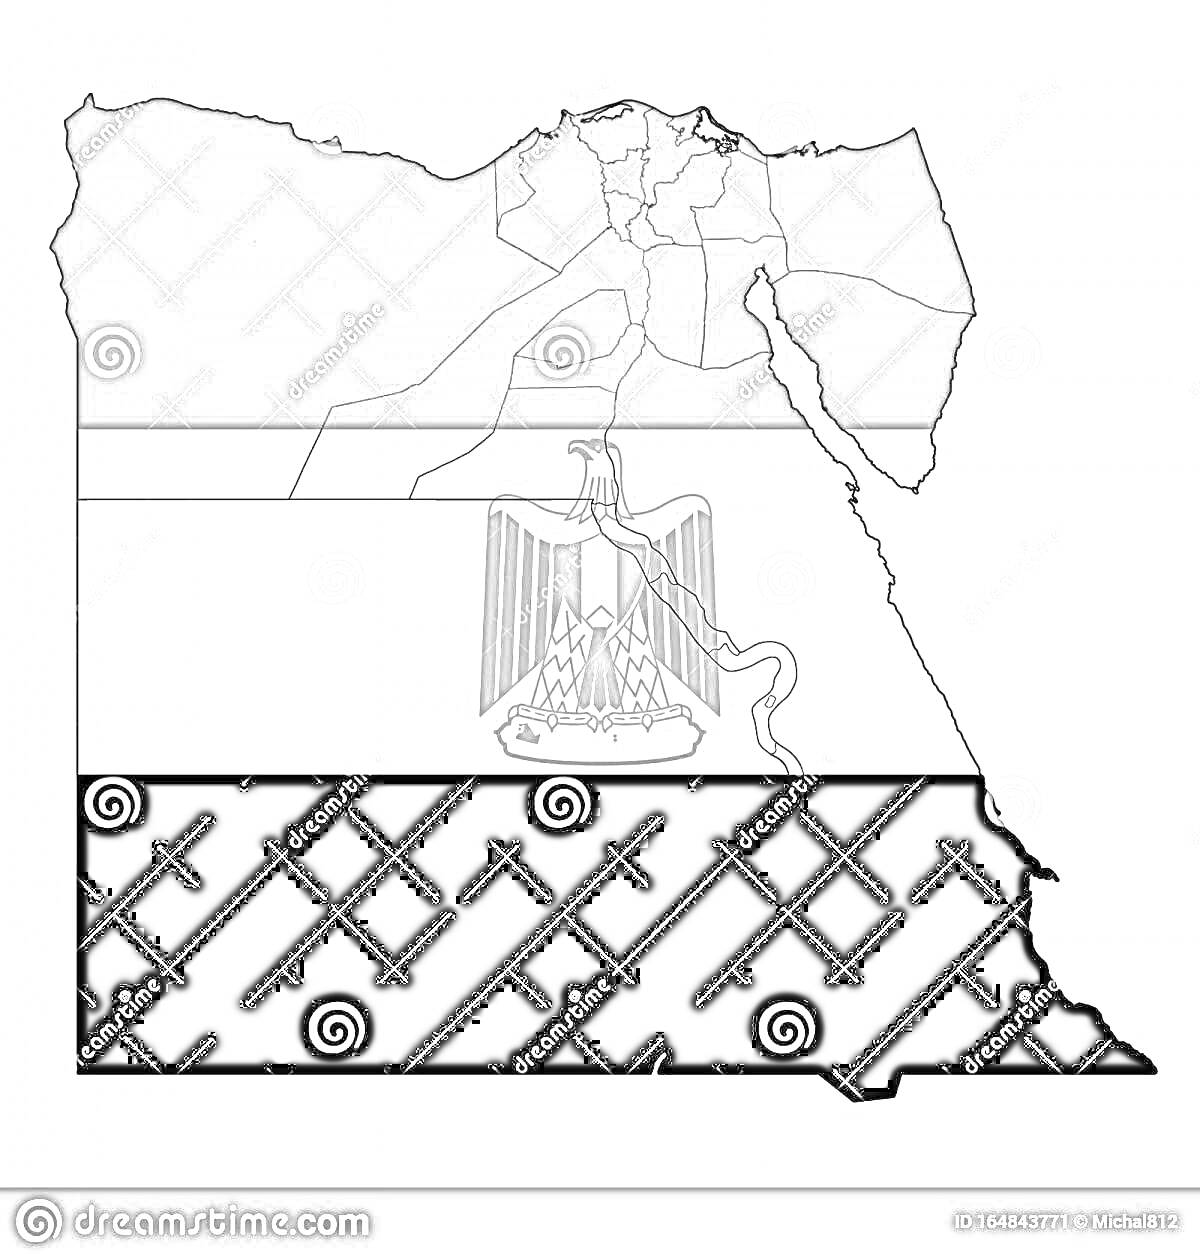 Контур карты Египта с изображением флага Египта и гербом